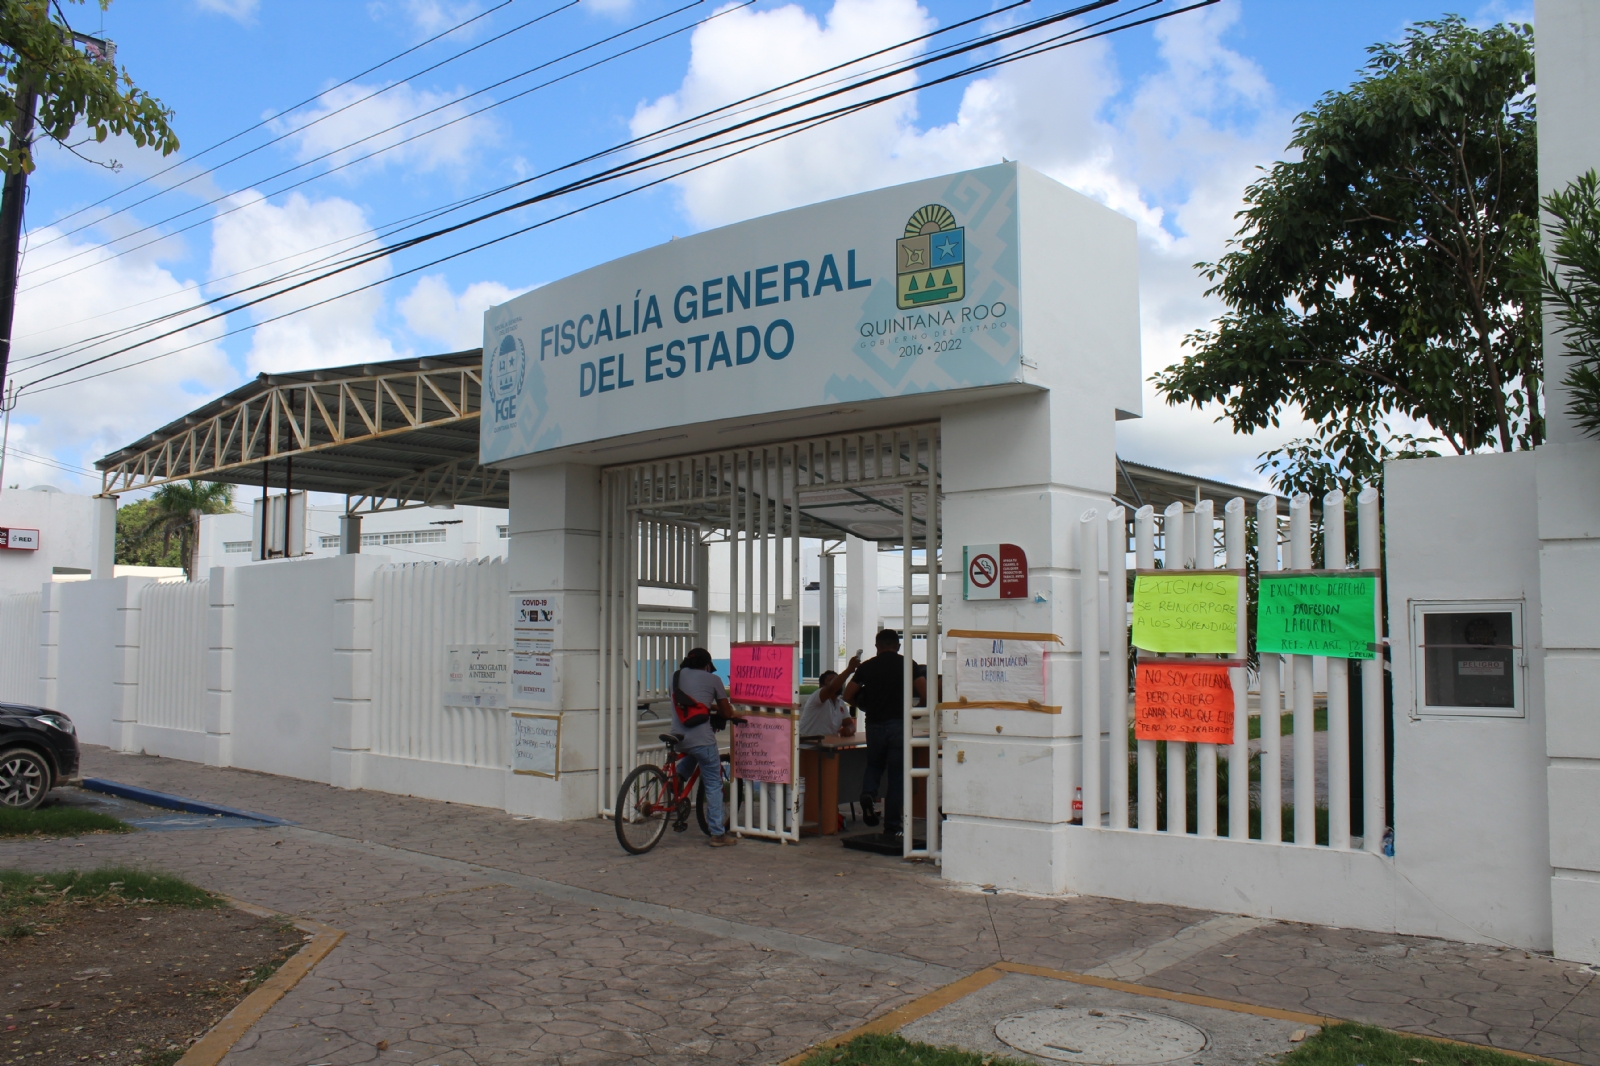 Fiscalía Anticorrupción de Quintana Roo, reprobada en autonomía y transparencia